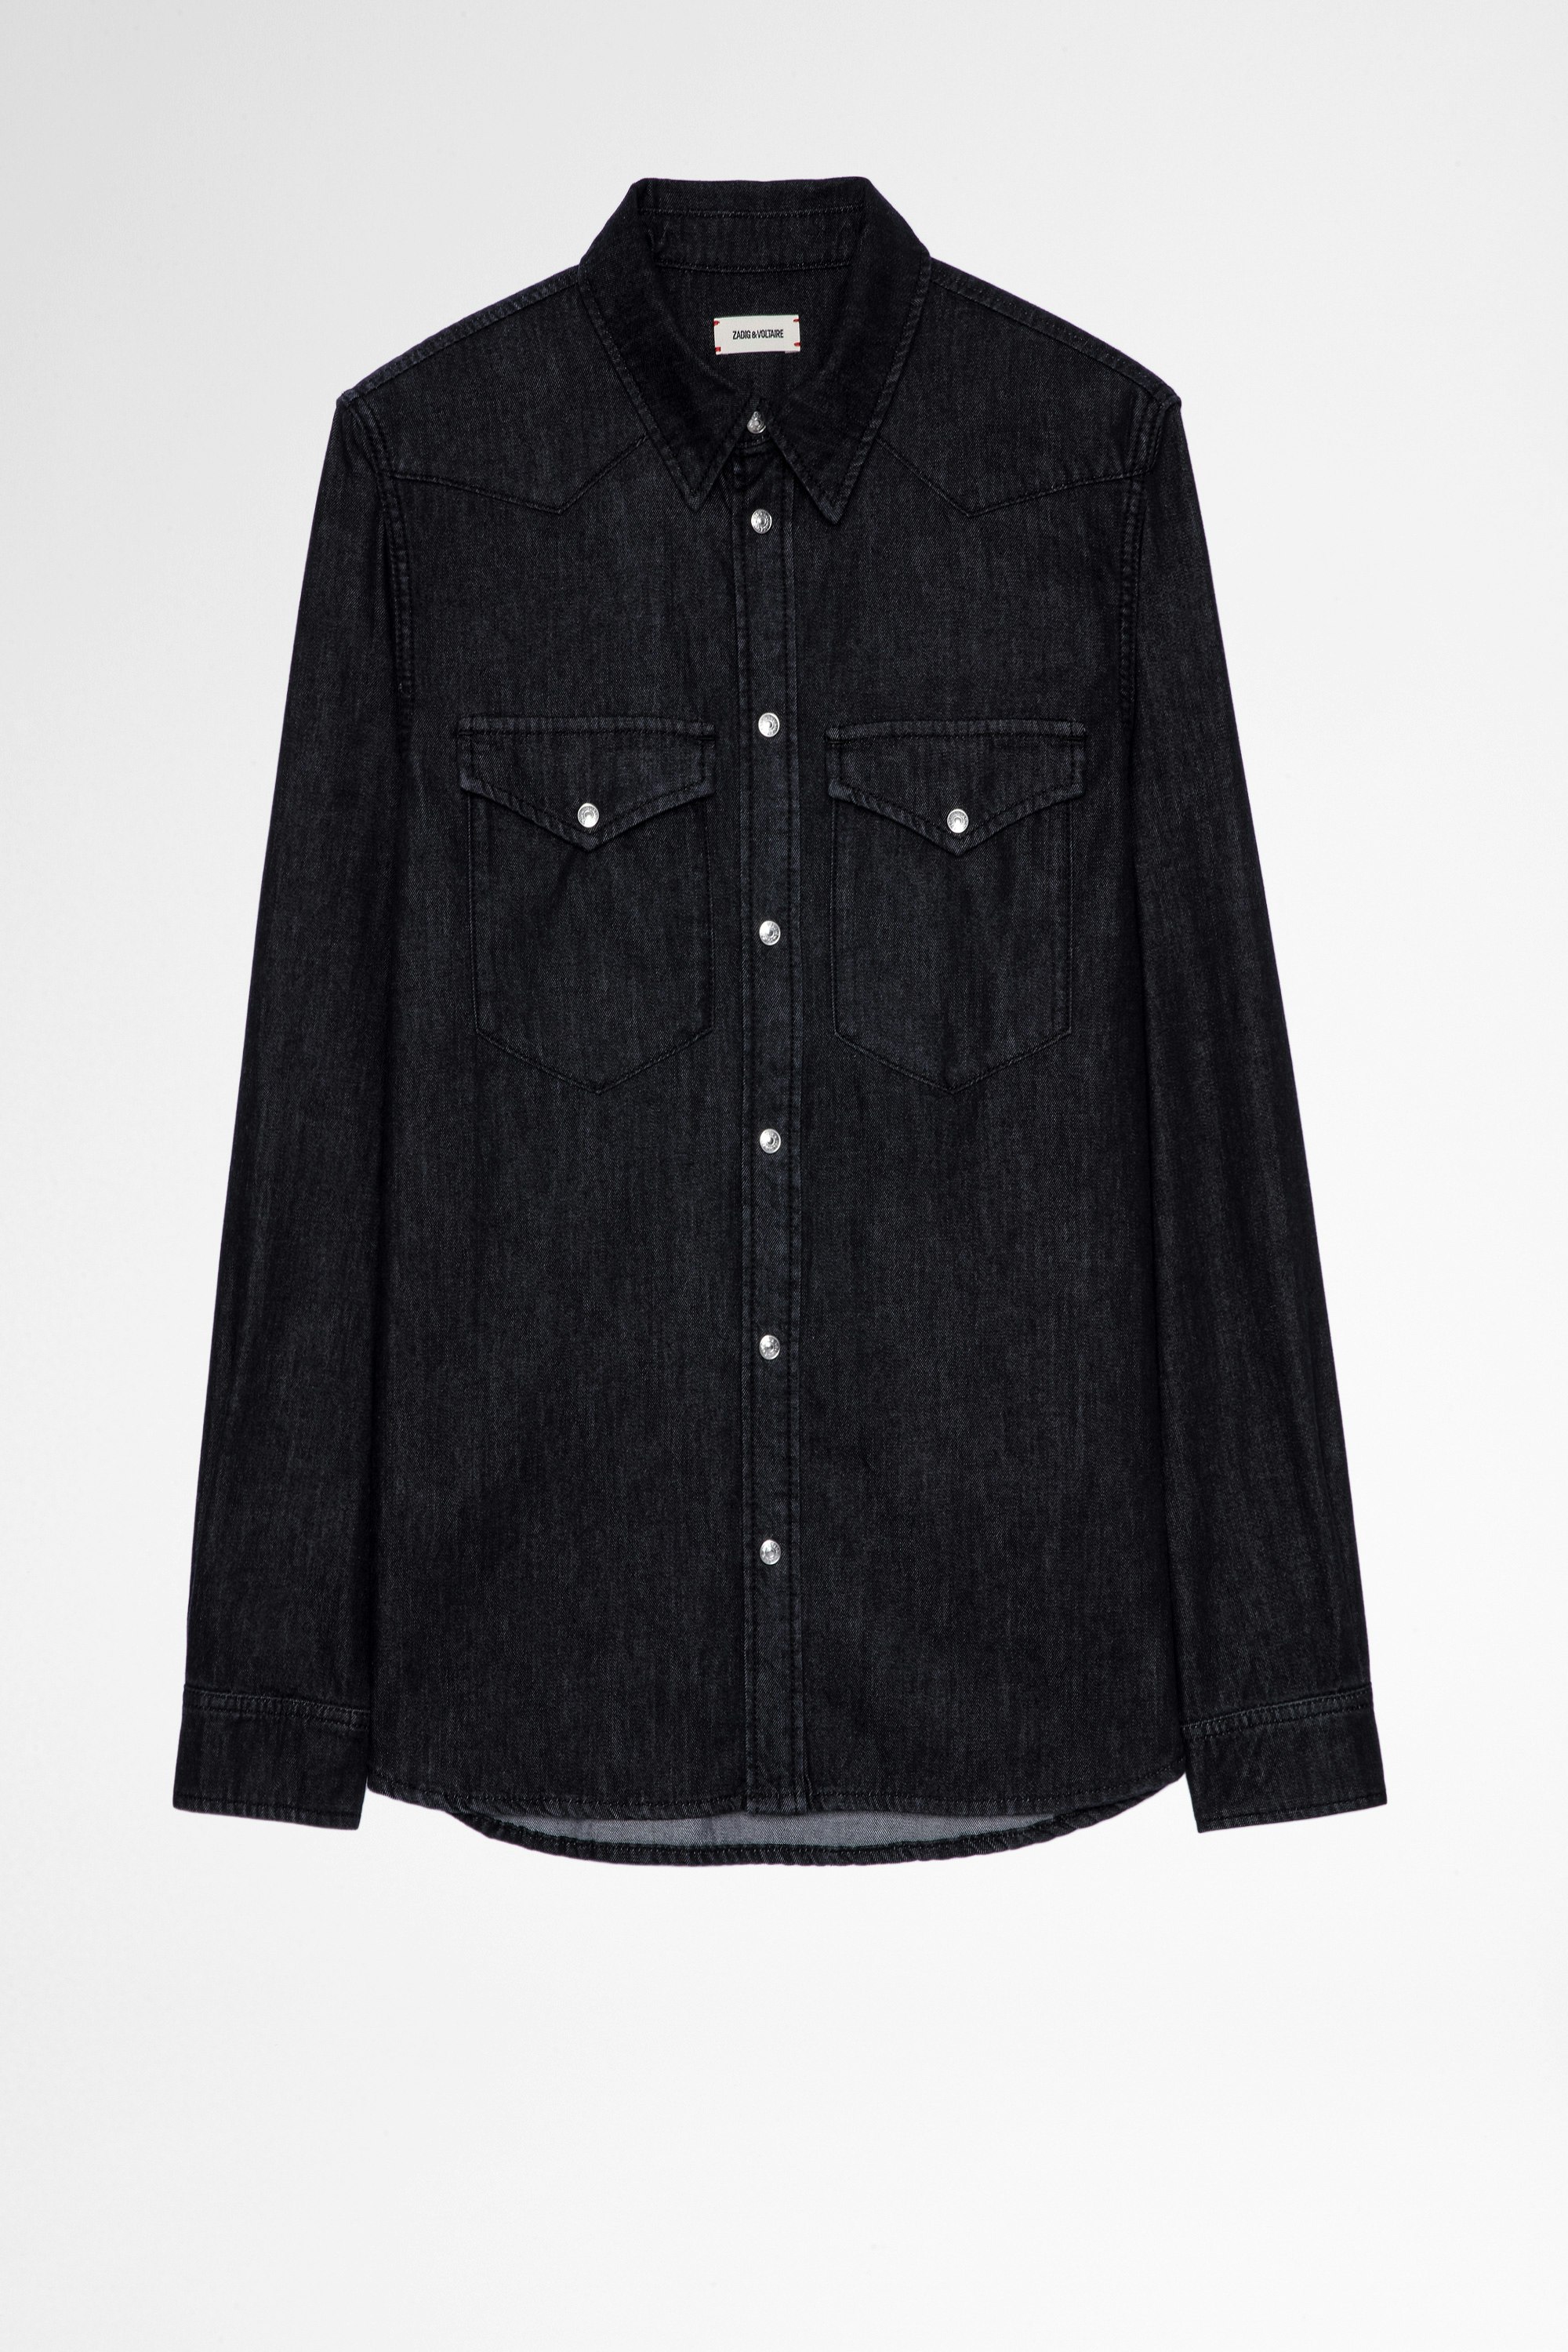 Camisa Stan Denim Camisa vaquera negra de hombre de algodón Art Lover. Este producto cuenta con la certificación GOTS y está confeccionado con fibras procedentes de la agricultura ecológica.